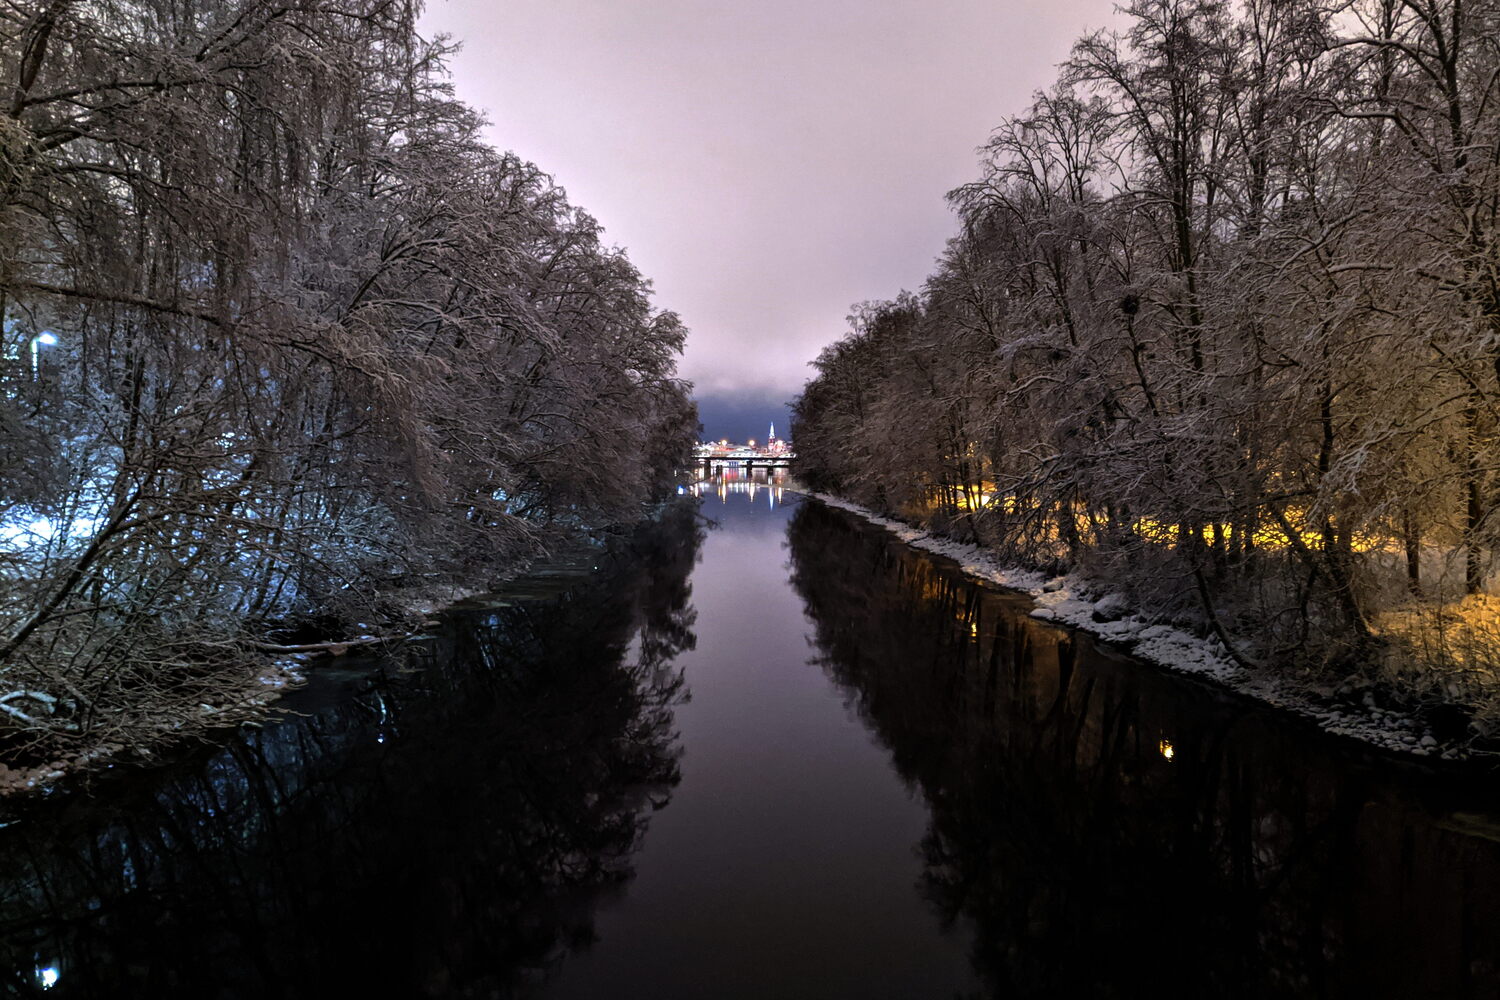 Bron mellan Bölesholmarna och Teg, nedströms, med Umeås stadskärna och stadskyrkan i fjärran.